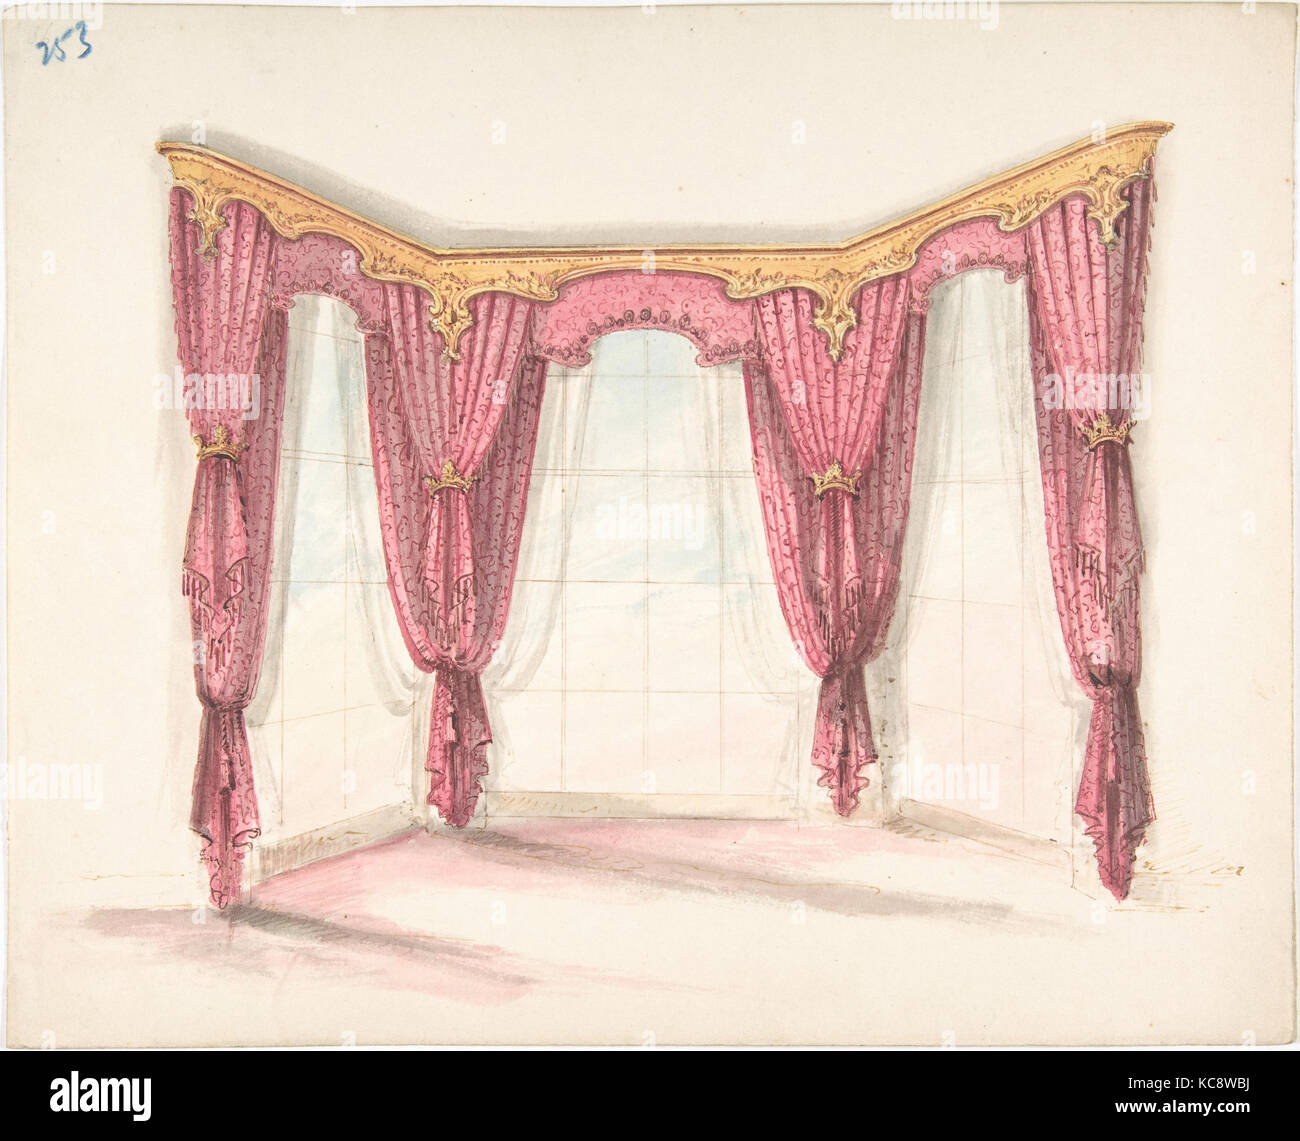 Pour la conception de rideaux rouge avec un Gold cantonnières, anonyme, britannique, 19ème siècle, début du xixe siècle Banque D'Images